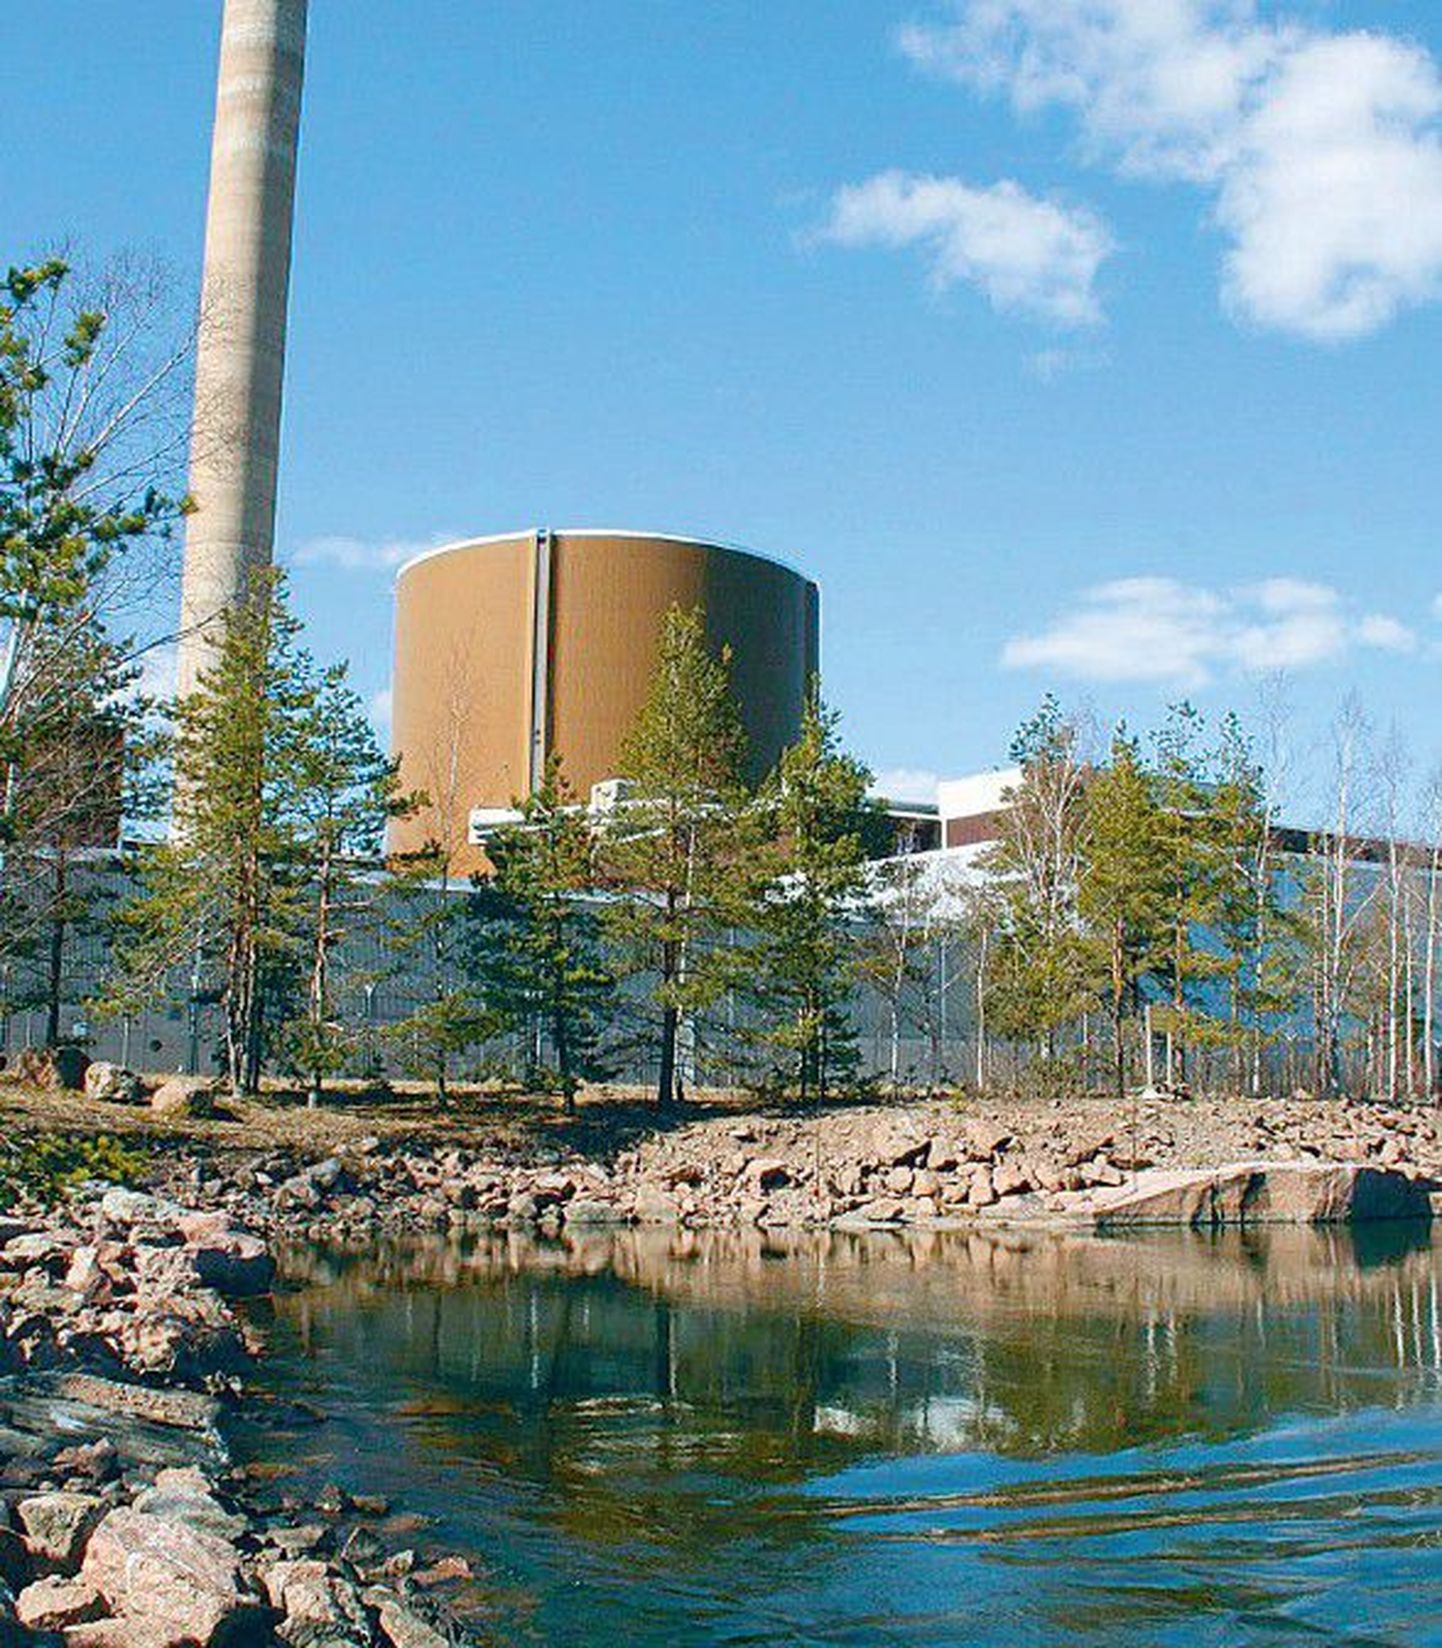 Атомная станция Ловийса расположена на морском побережье, поскольку для охлаждения реакторов необходимо большое количество воды. Это, в свою очередь, оказывает влияние на окружающую среду: морская вода в радиусе около километра теплее, чем в других местах.